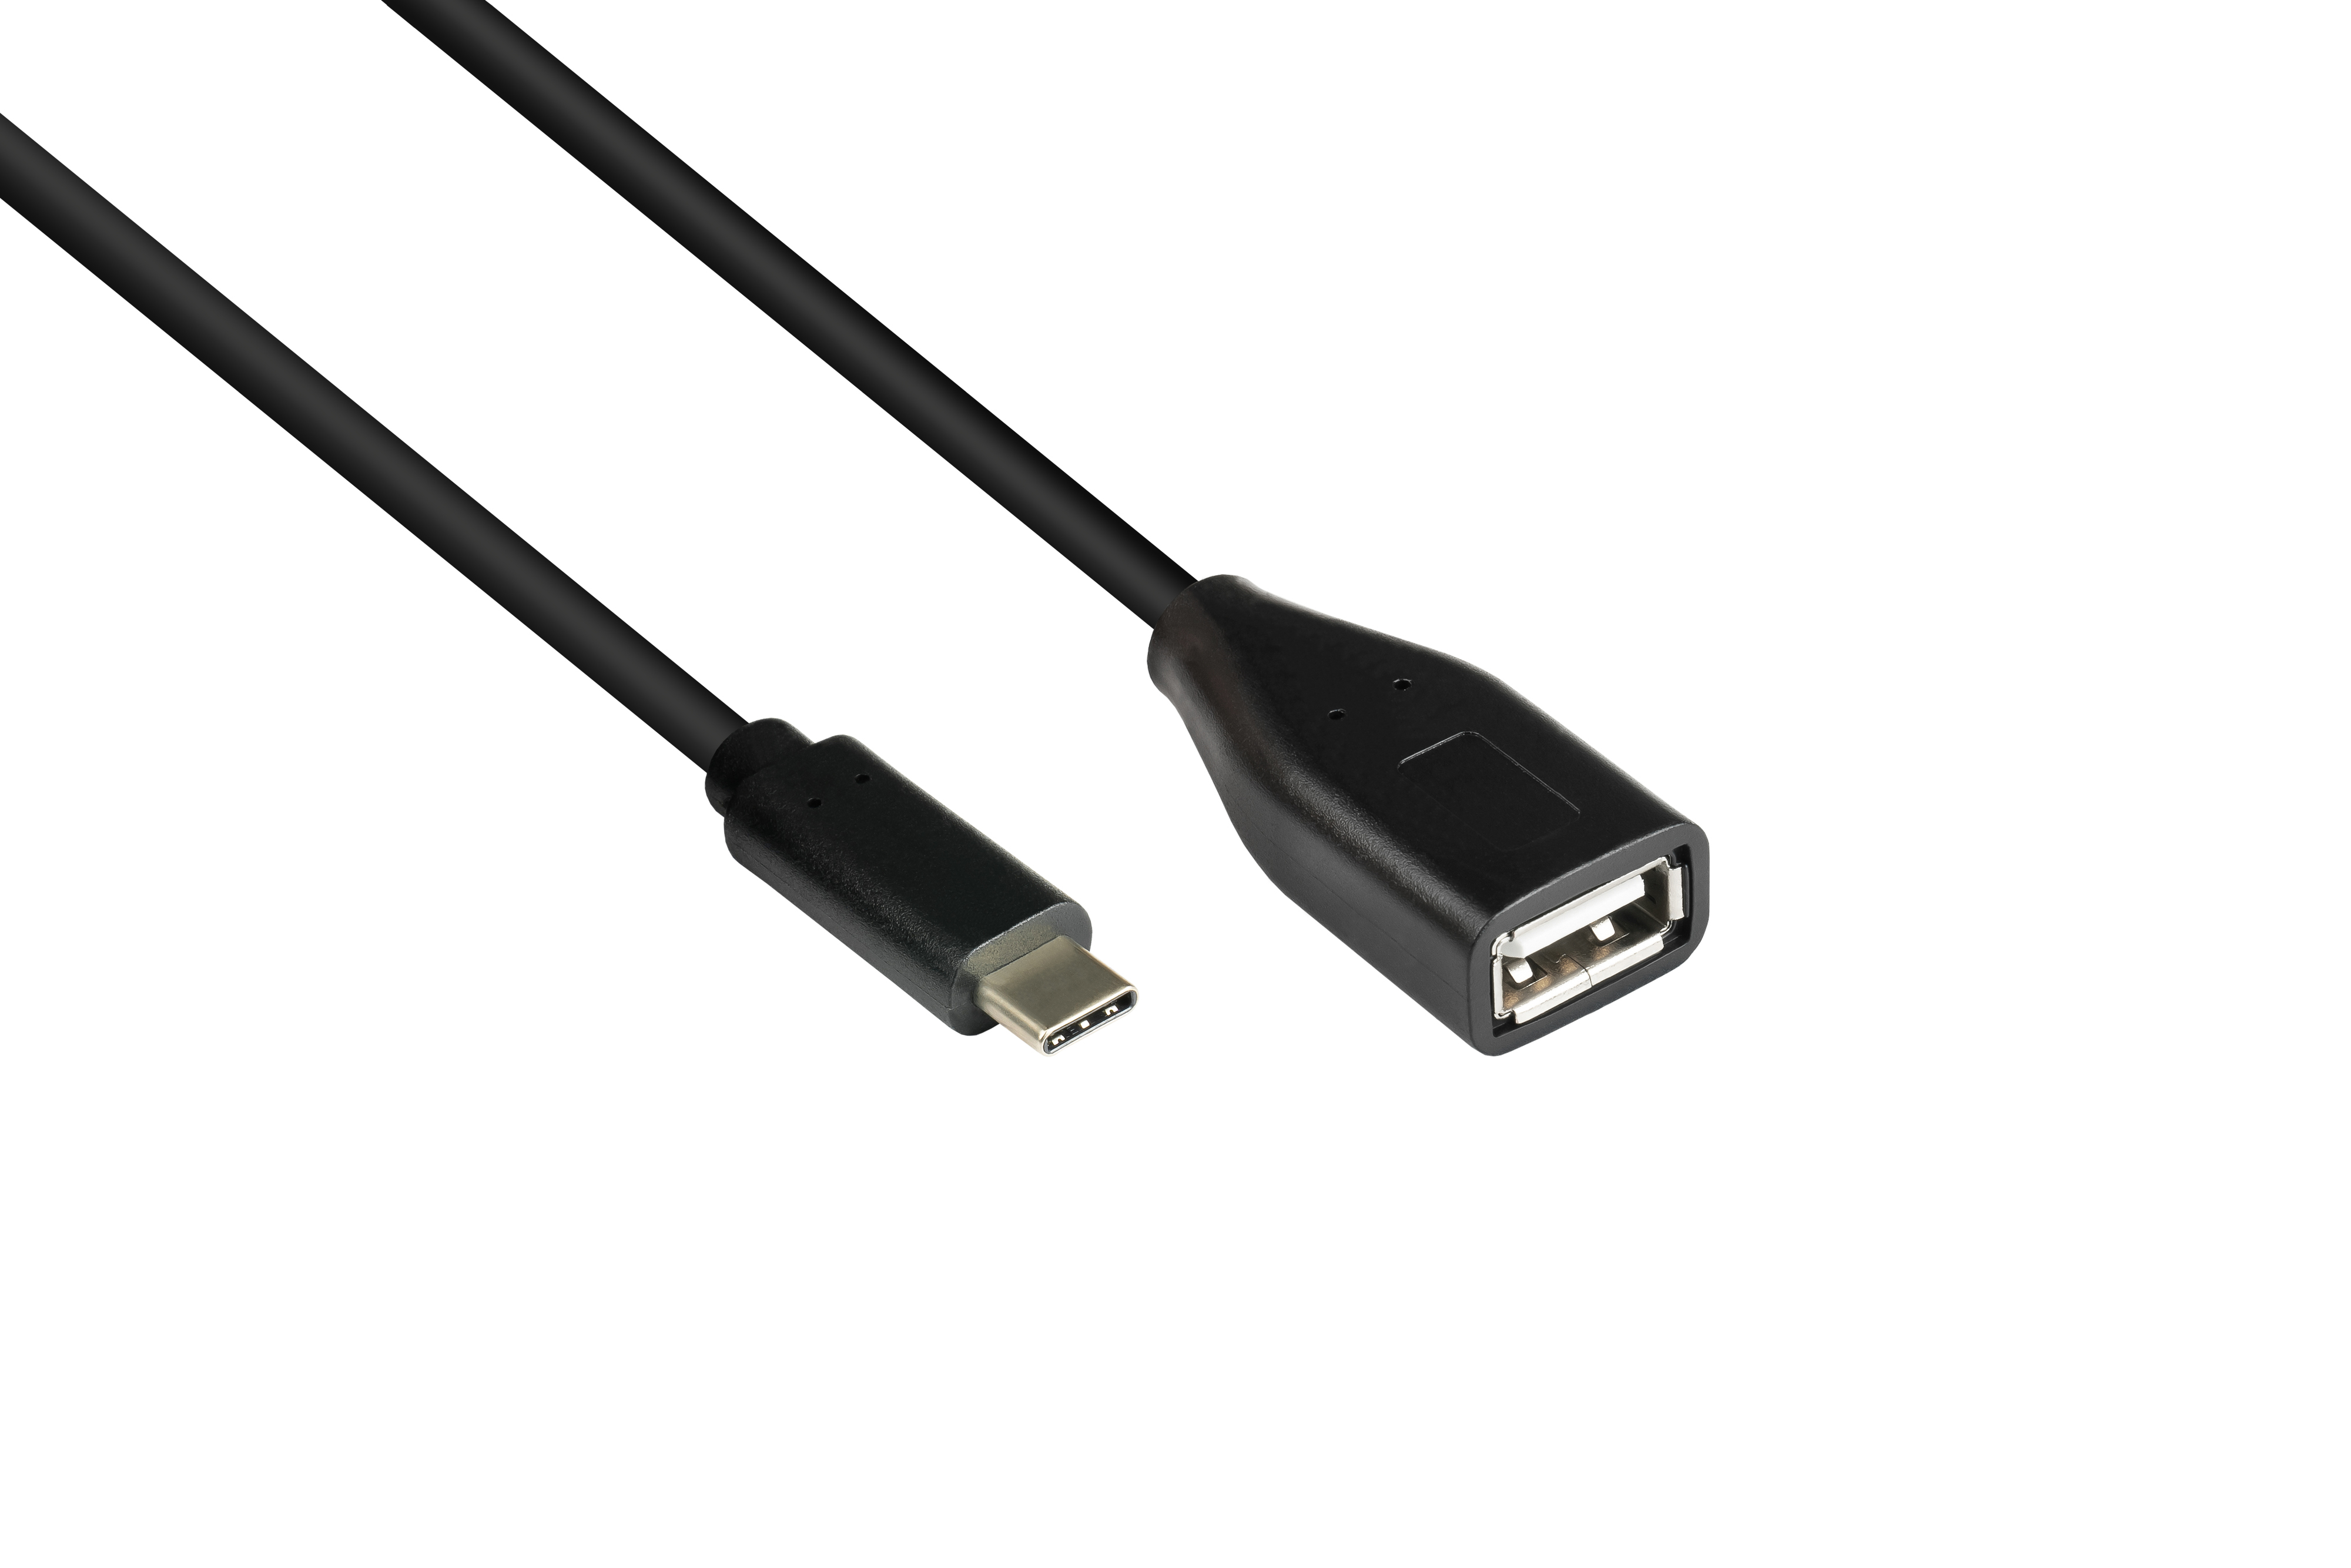 KABELMEISTER USB 2.0 A Buchse, Stecker schwarz OTG USB (On-the-go), USB-C™ Adapterkabel an